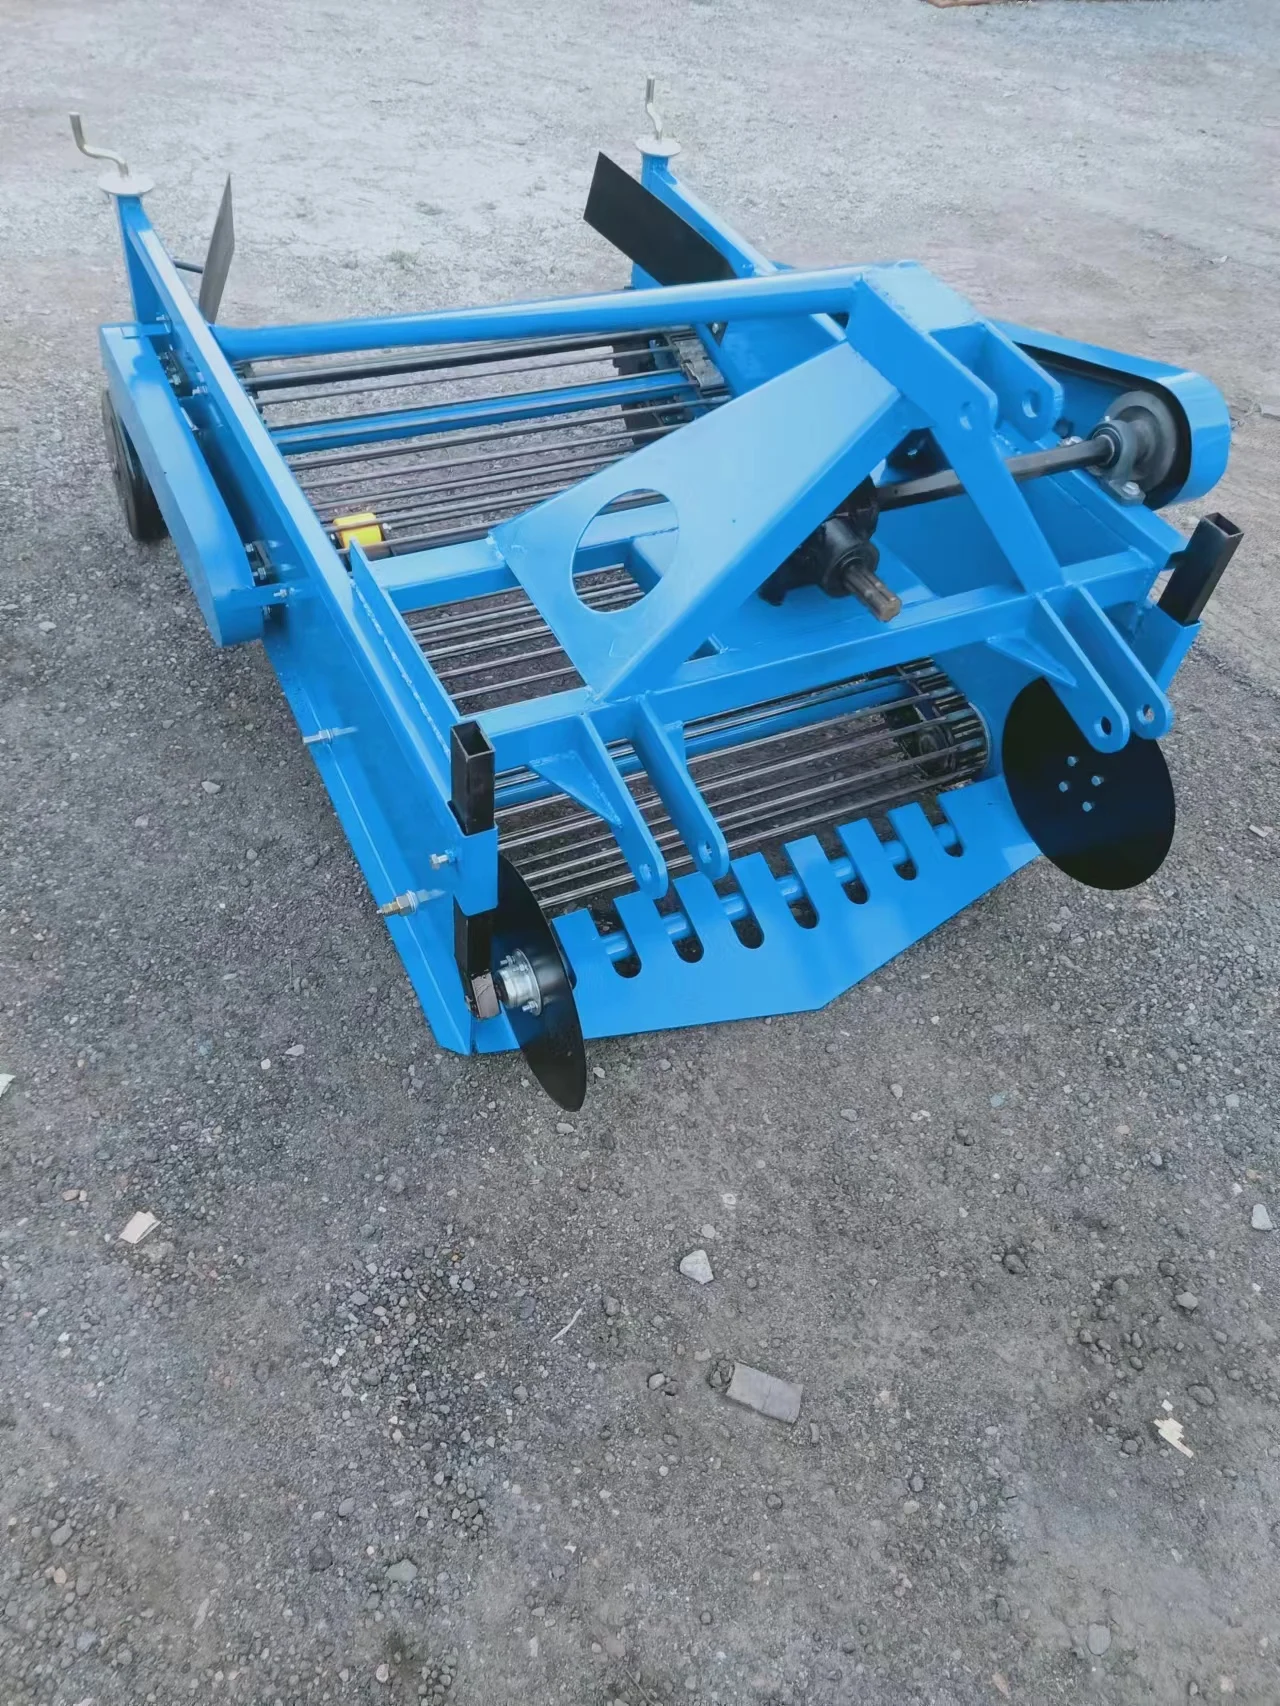 Semi-automatic Combine tractor carrot potato harvester,mini sweet potato for sale